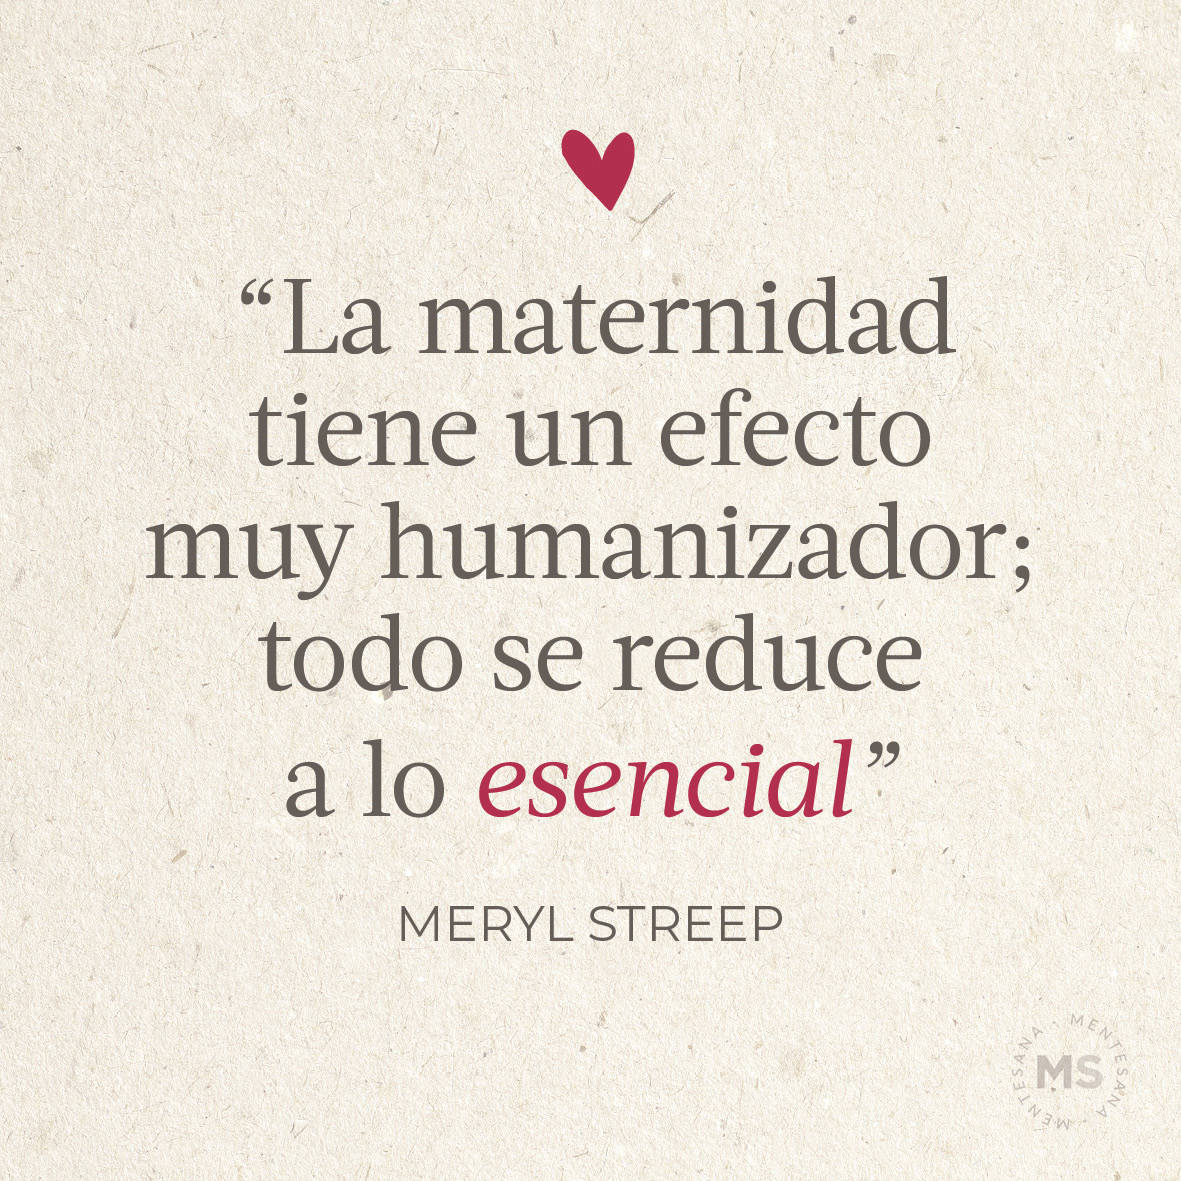 “La maternidad tiene un efecto muy humanizador; todo se reduce a lo esencial.” Meryl Streep